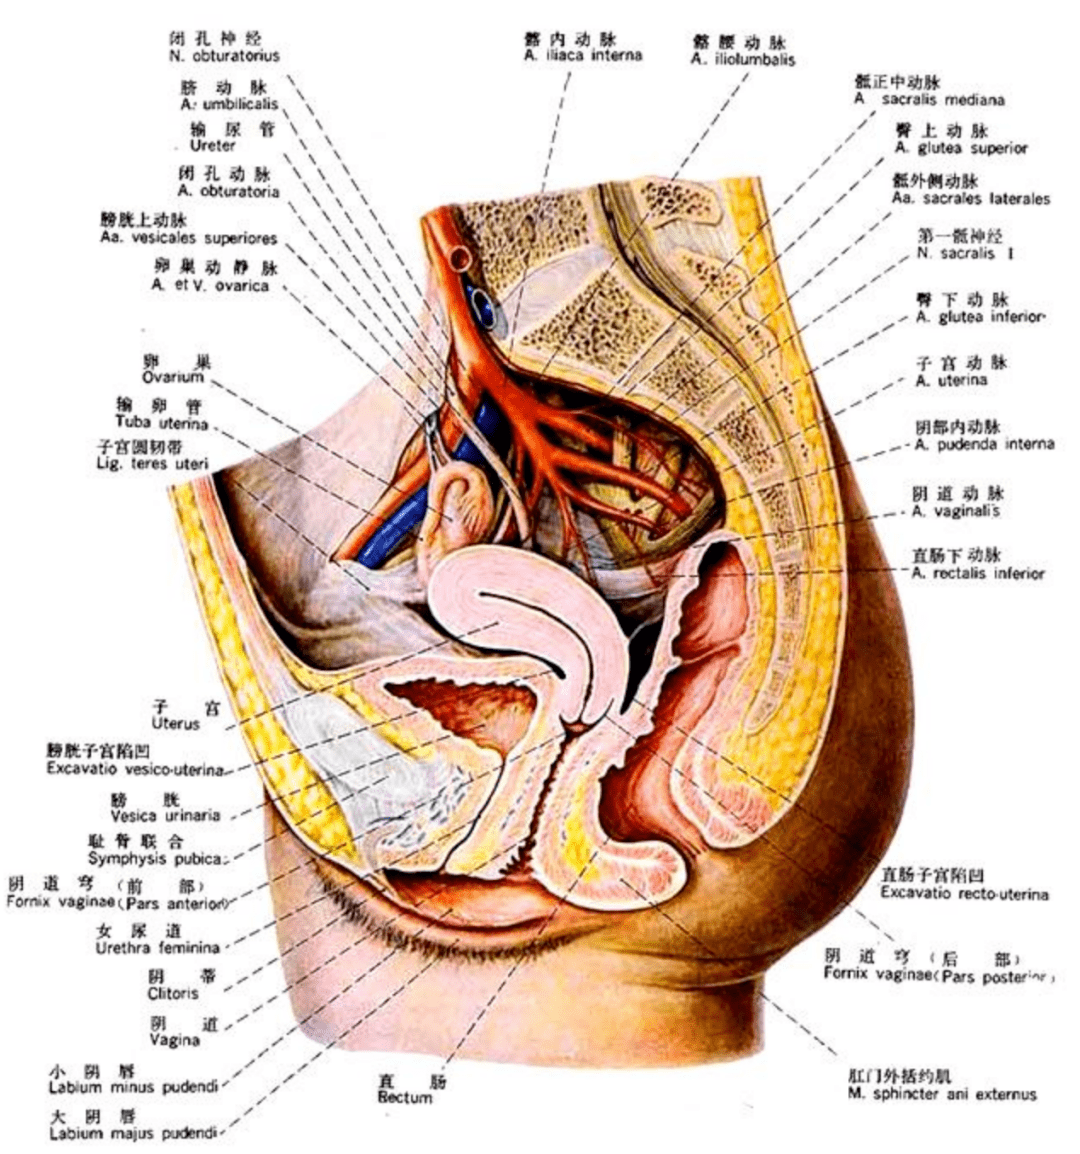 女性肠子与子宫的位置图片